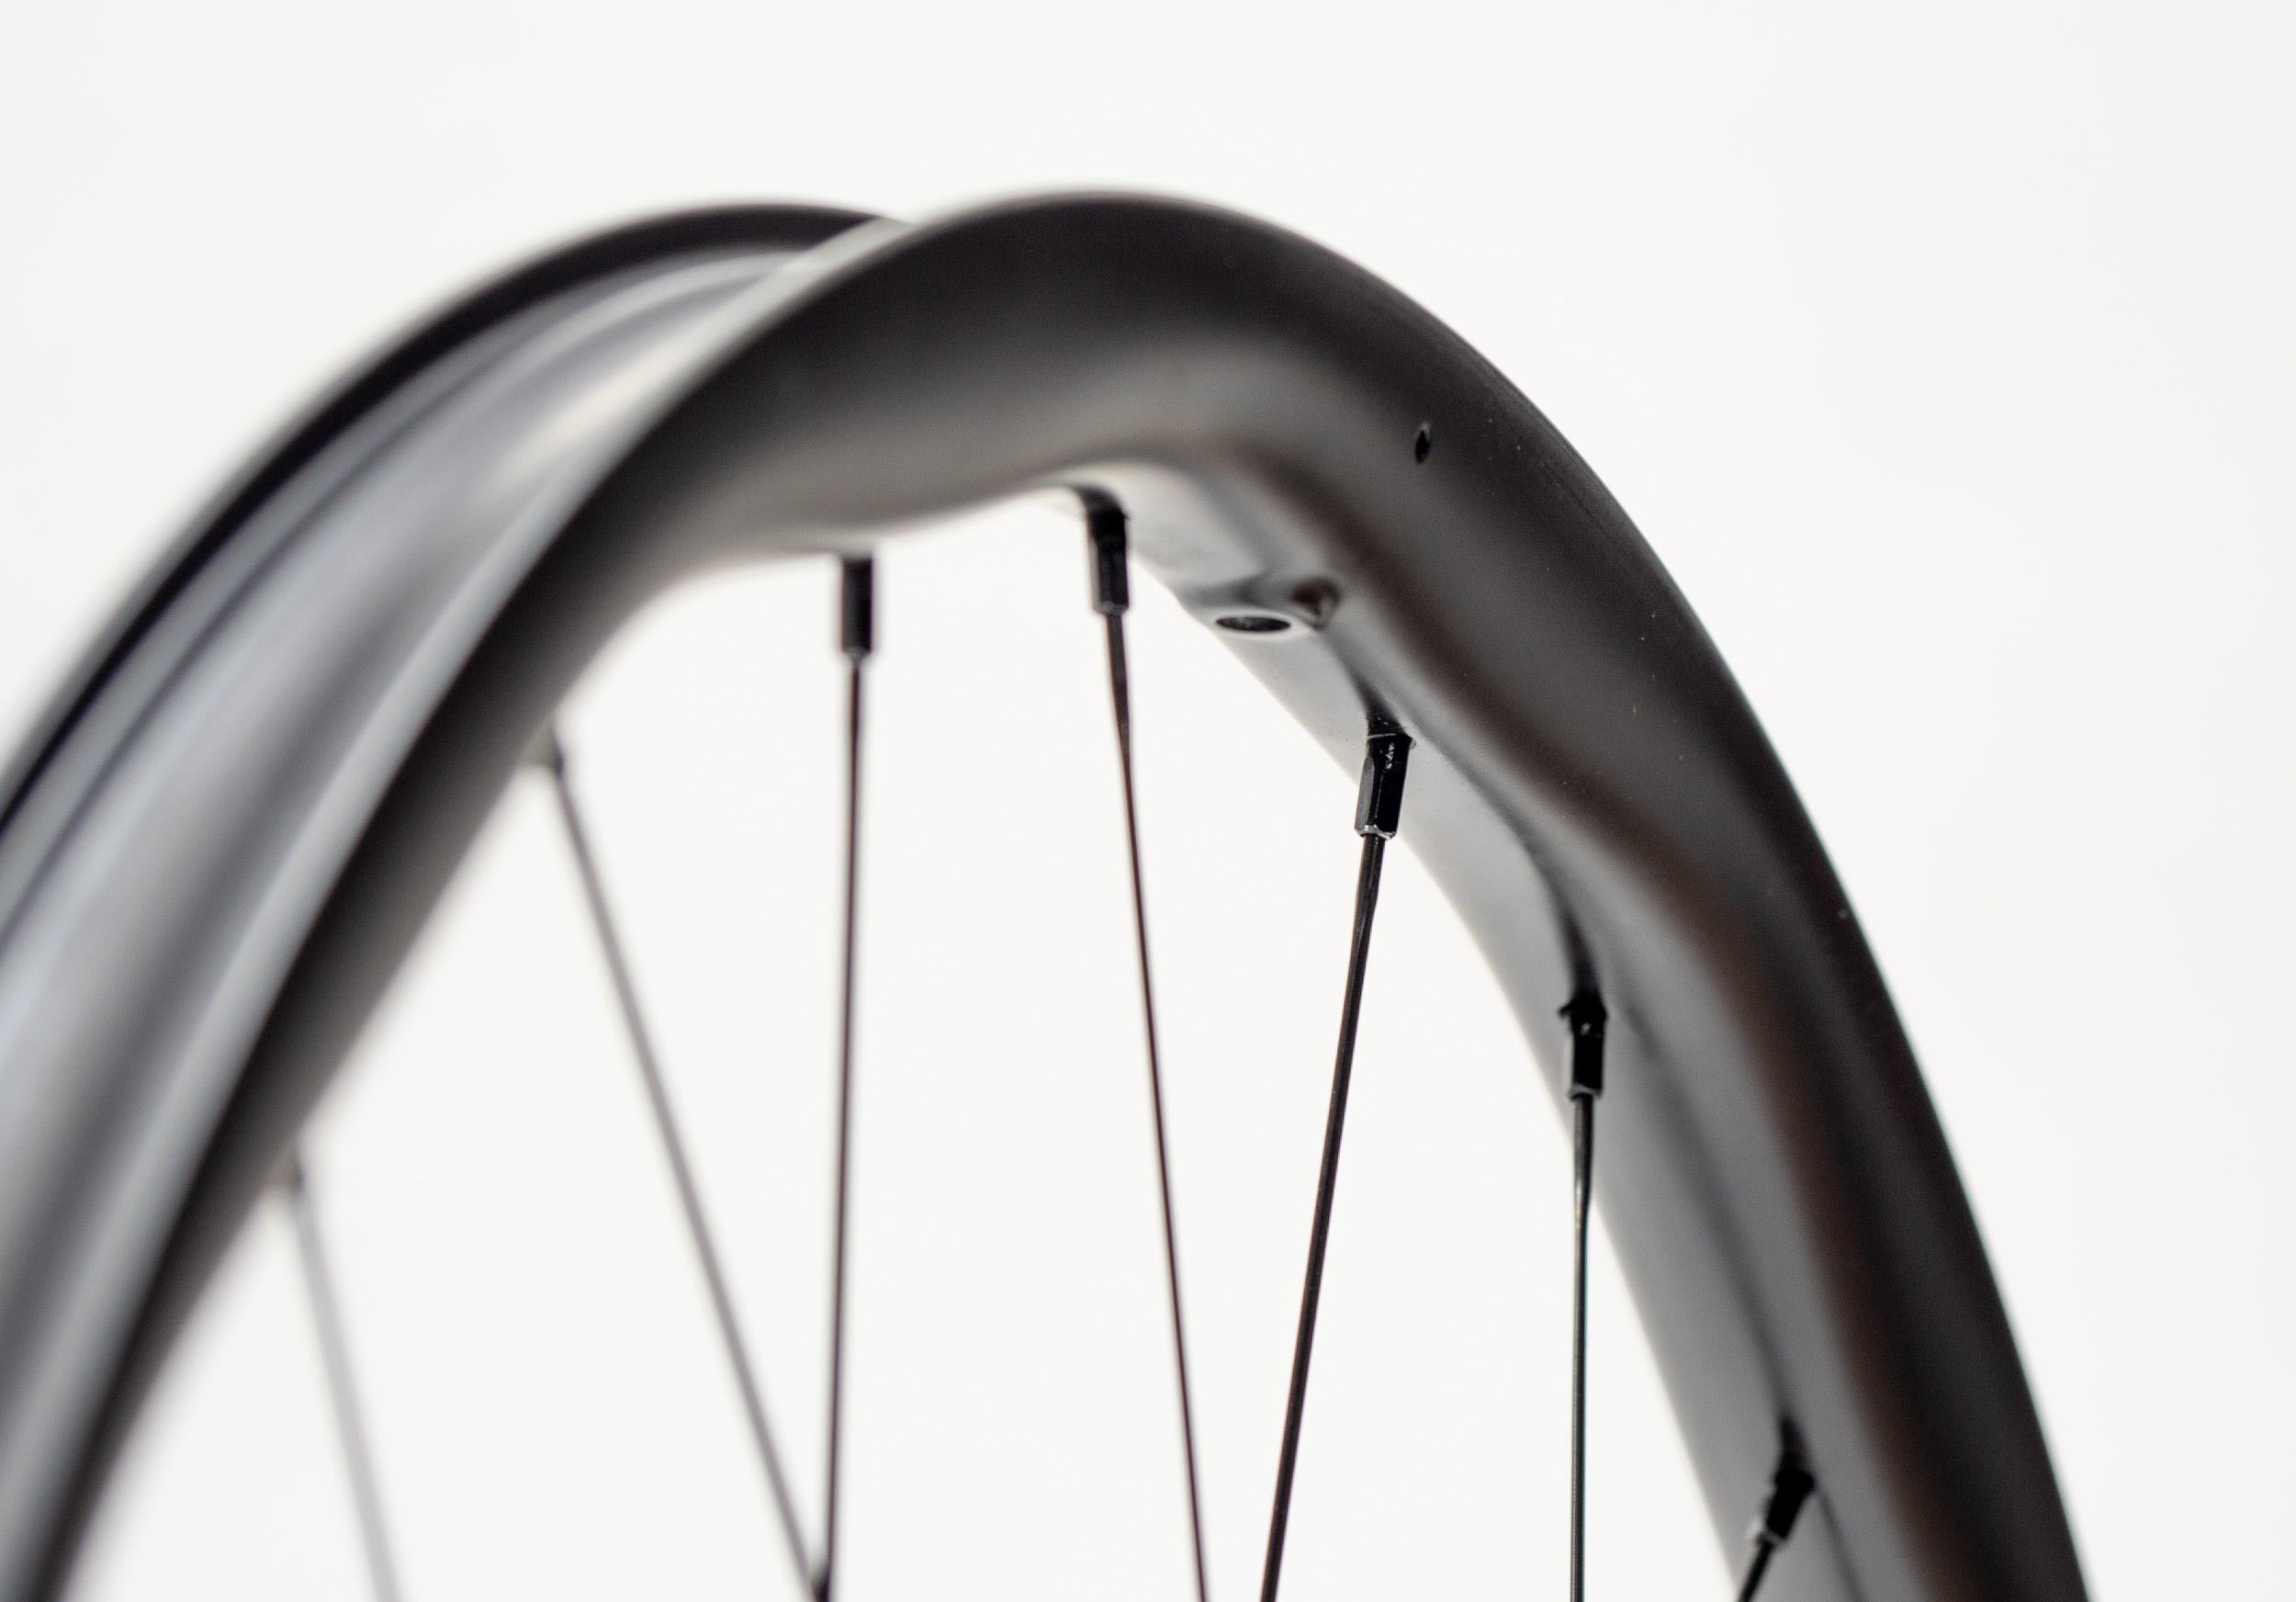 rim closeup of P1 Singularis M30 carbon mountain bike wheel